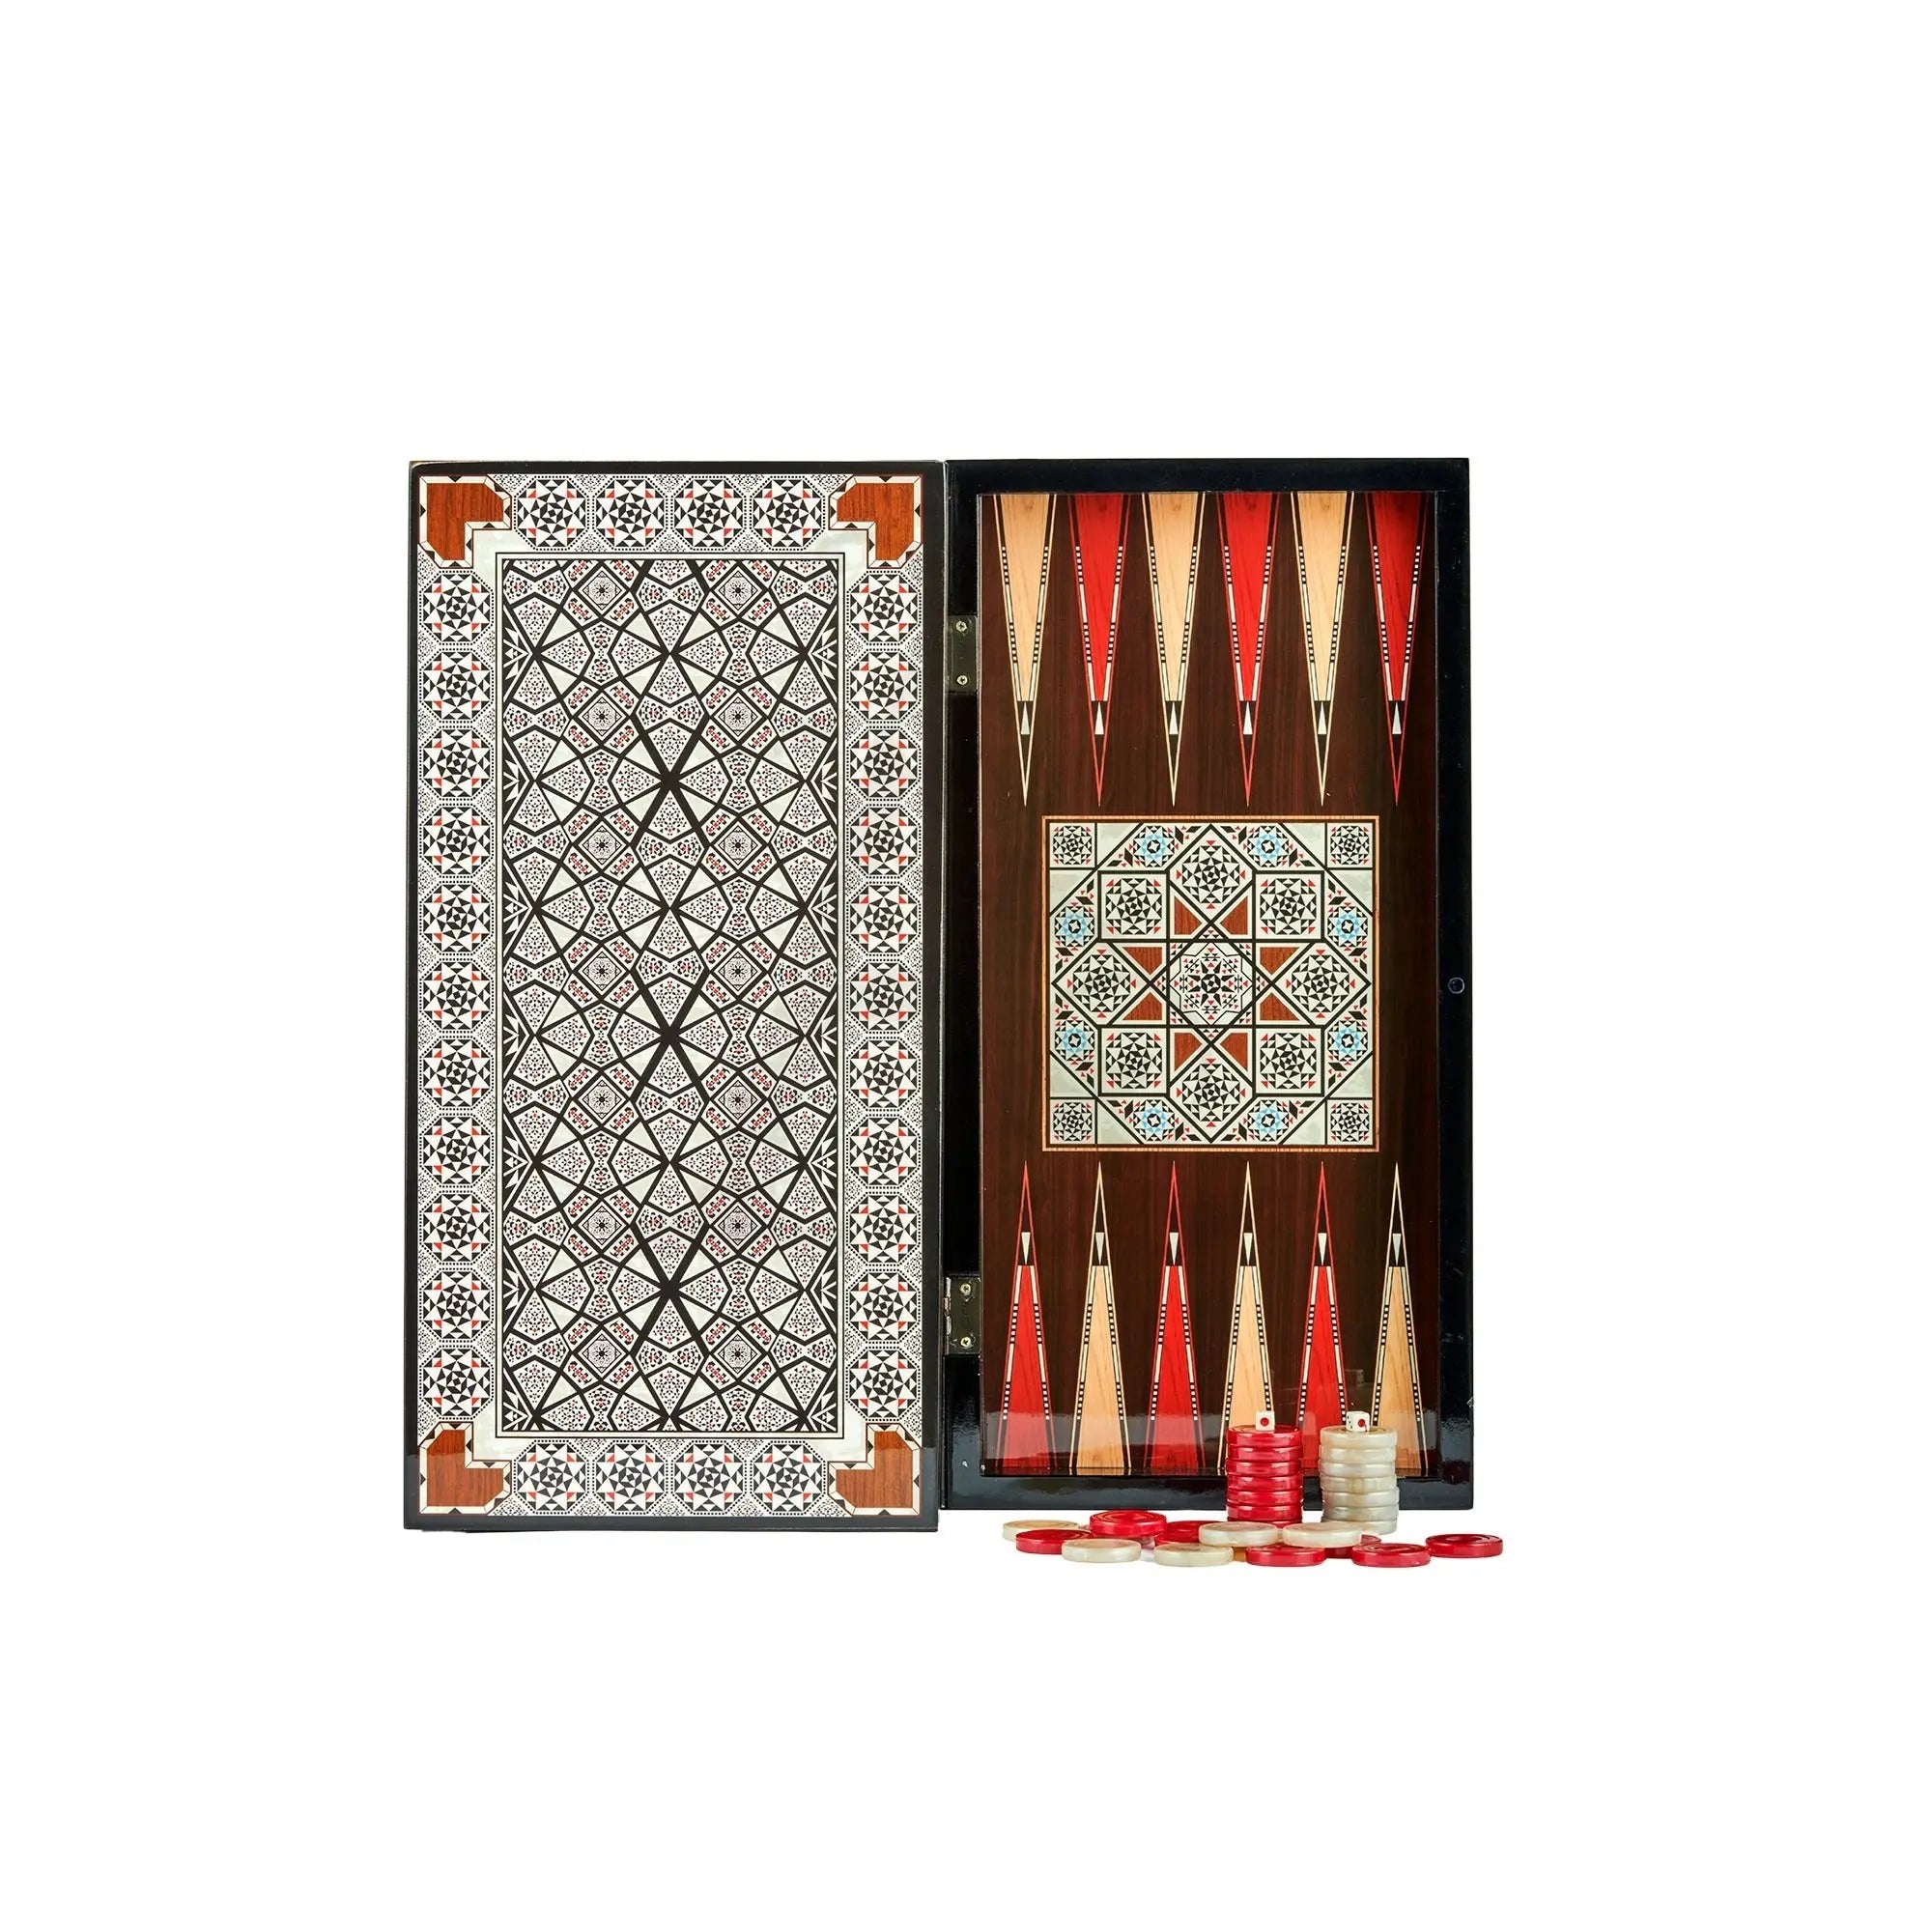 Eser Elegance Backgammon Star Pearl Set - Armani Gallery